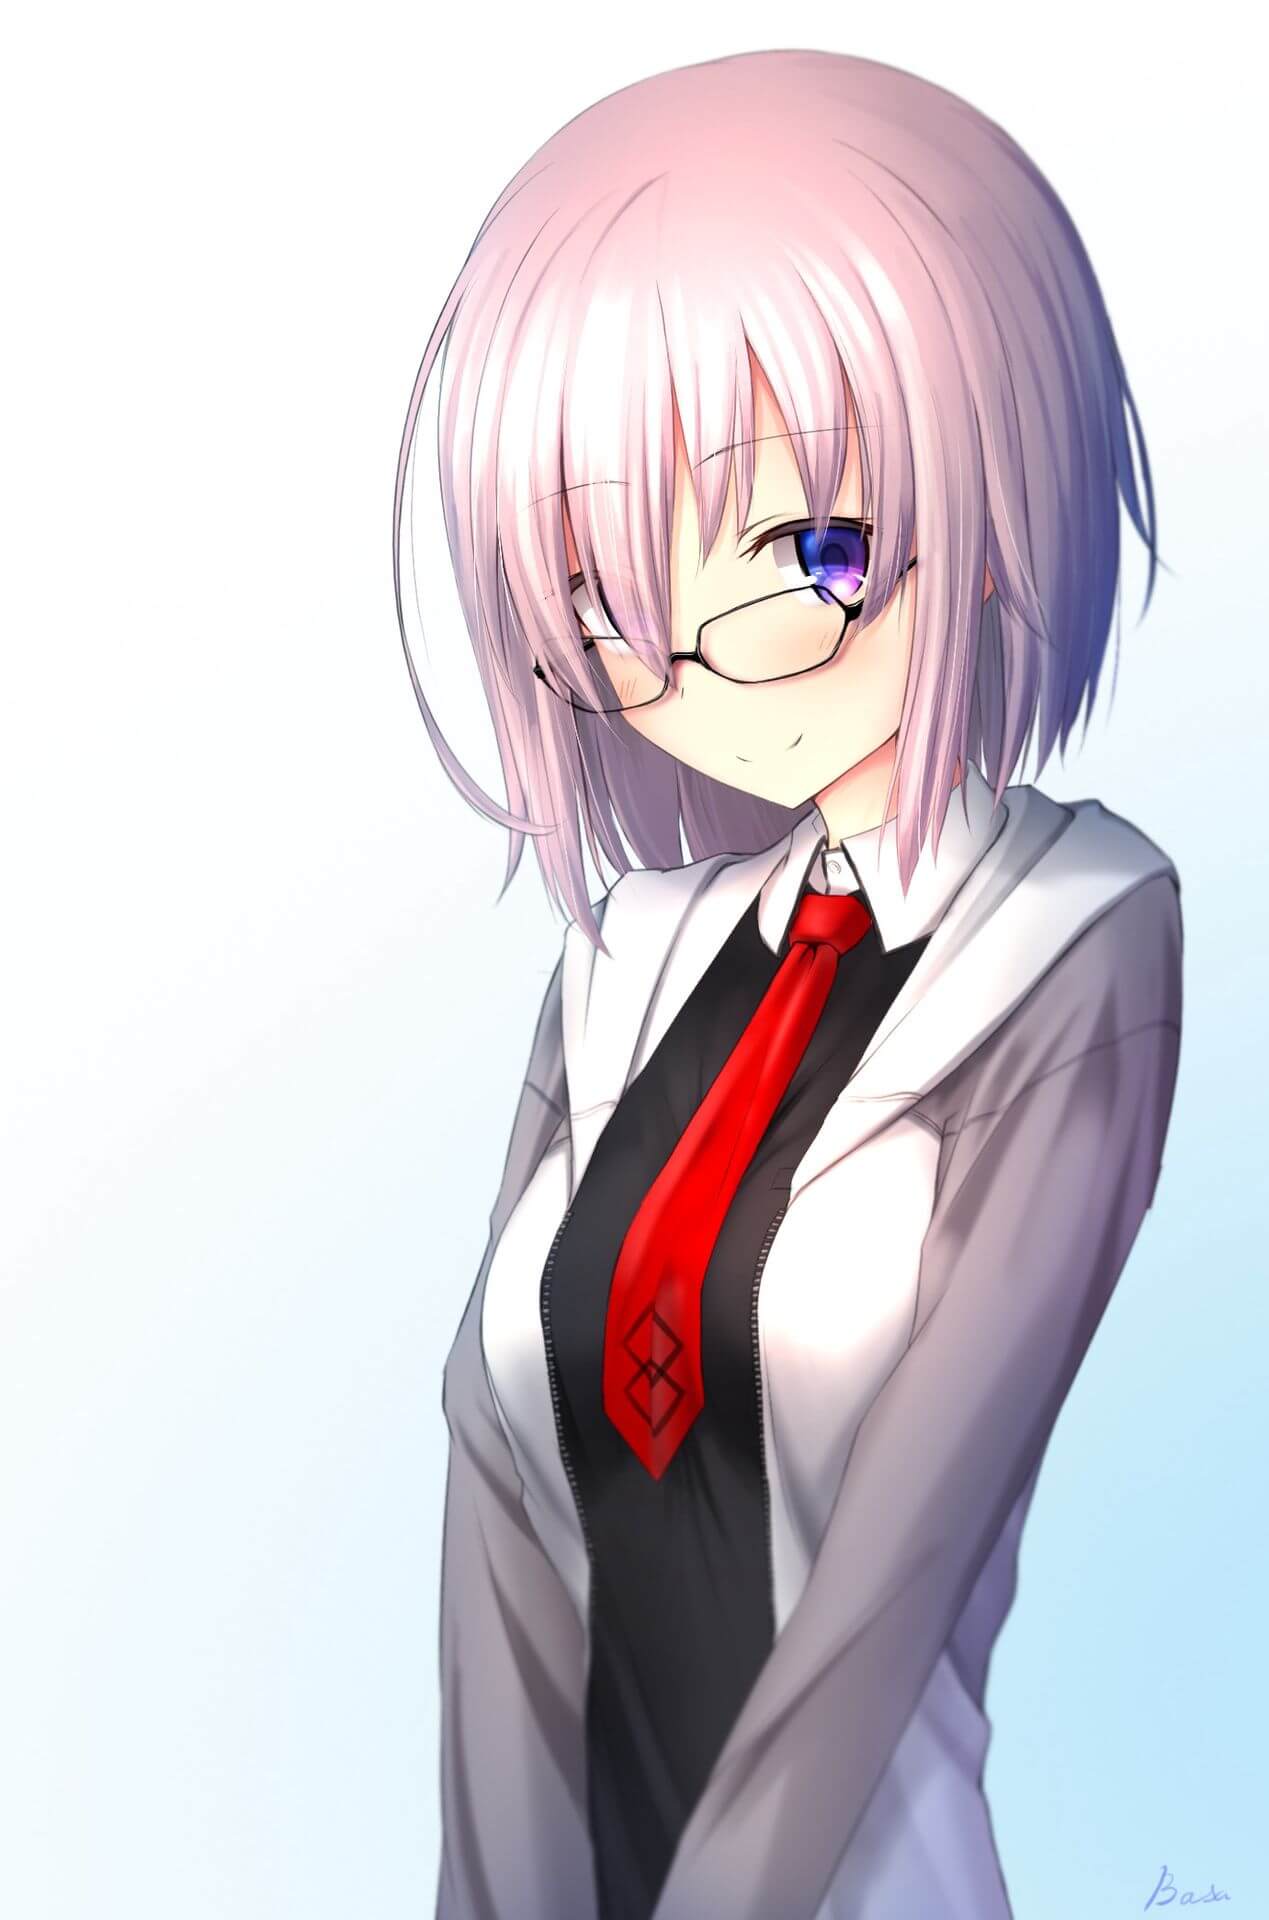 Anime nữ tóc ngắn gương mặt dễ thương